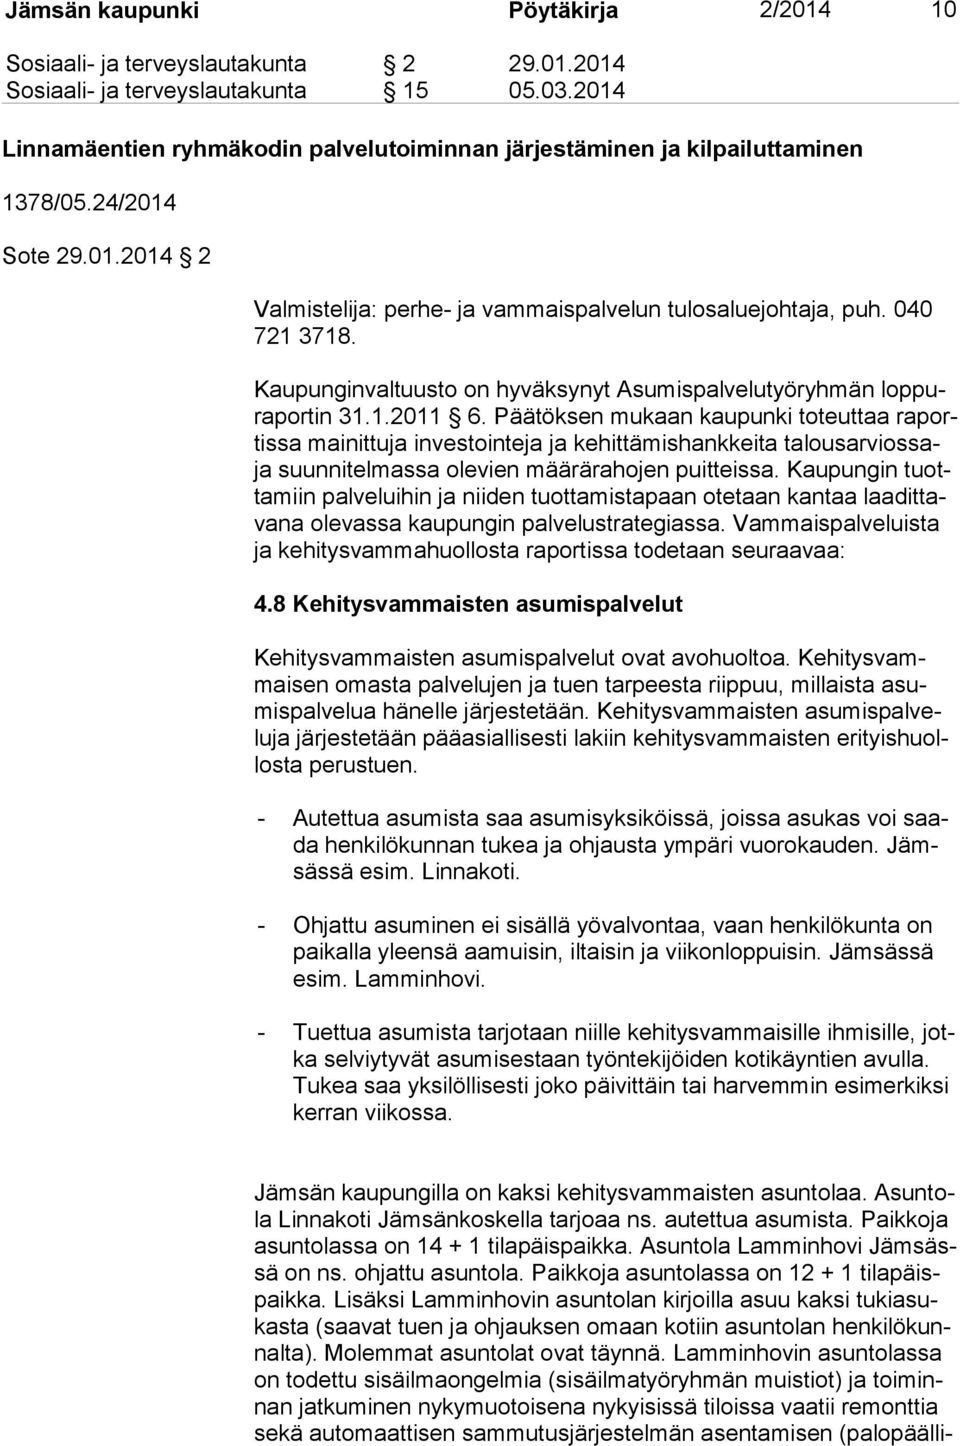 Kaupunginvaltuusto on hyväksynyt Asumispalvelutyöryhmän lop pura por tin 31.1.2011 6.